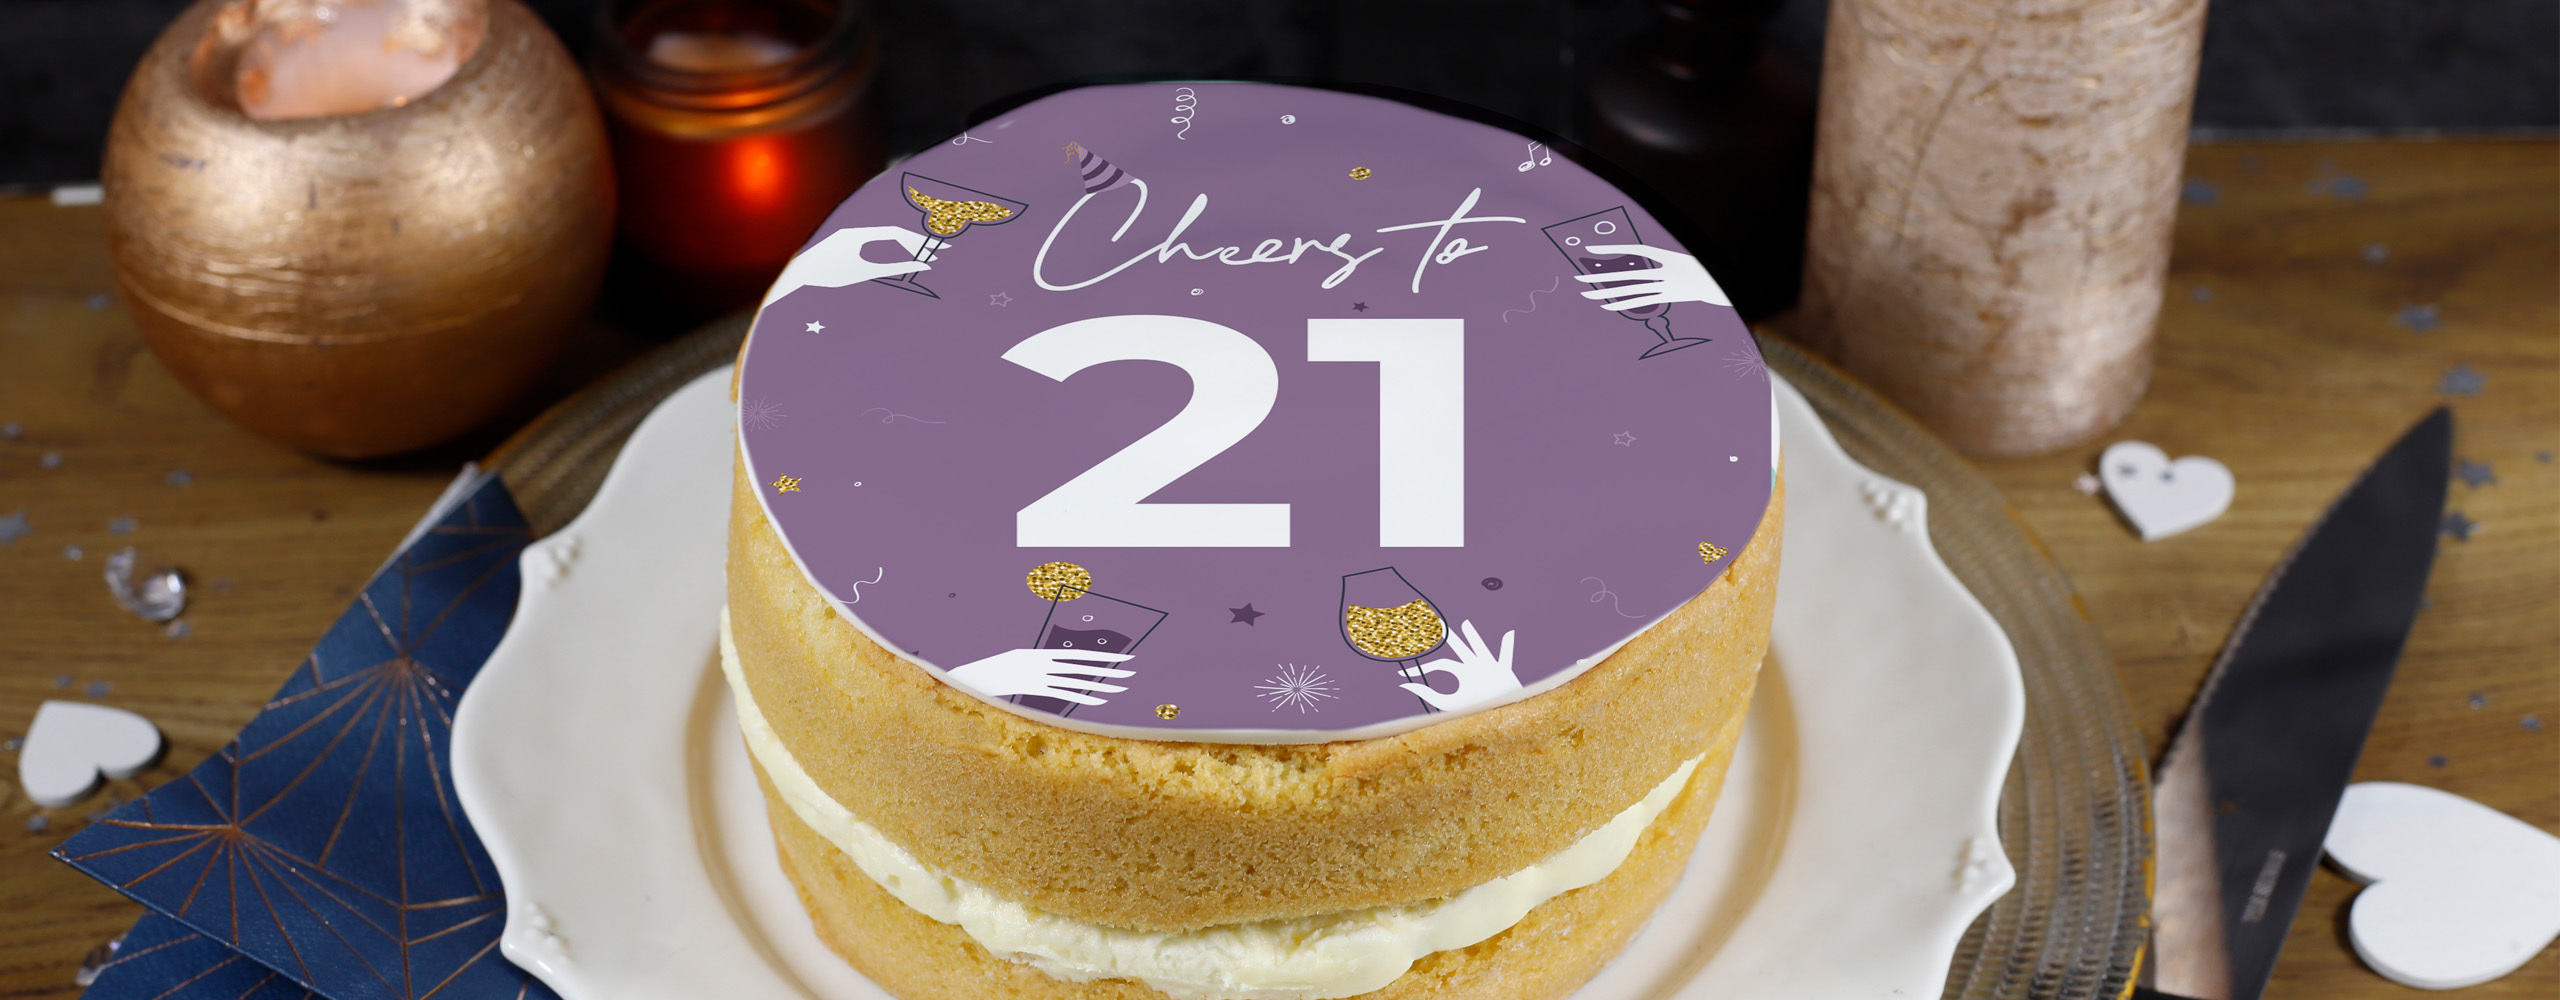 21st birthday key cakes for girls